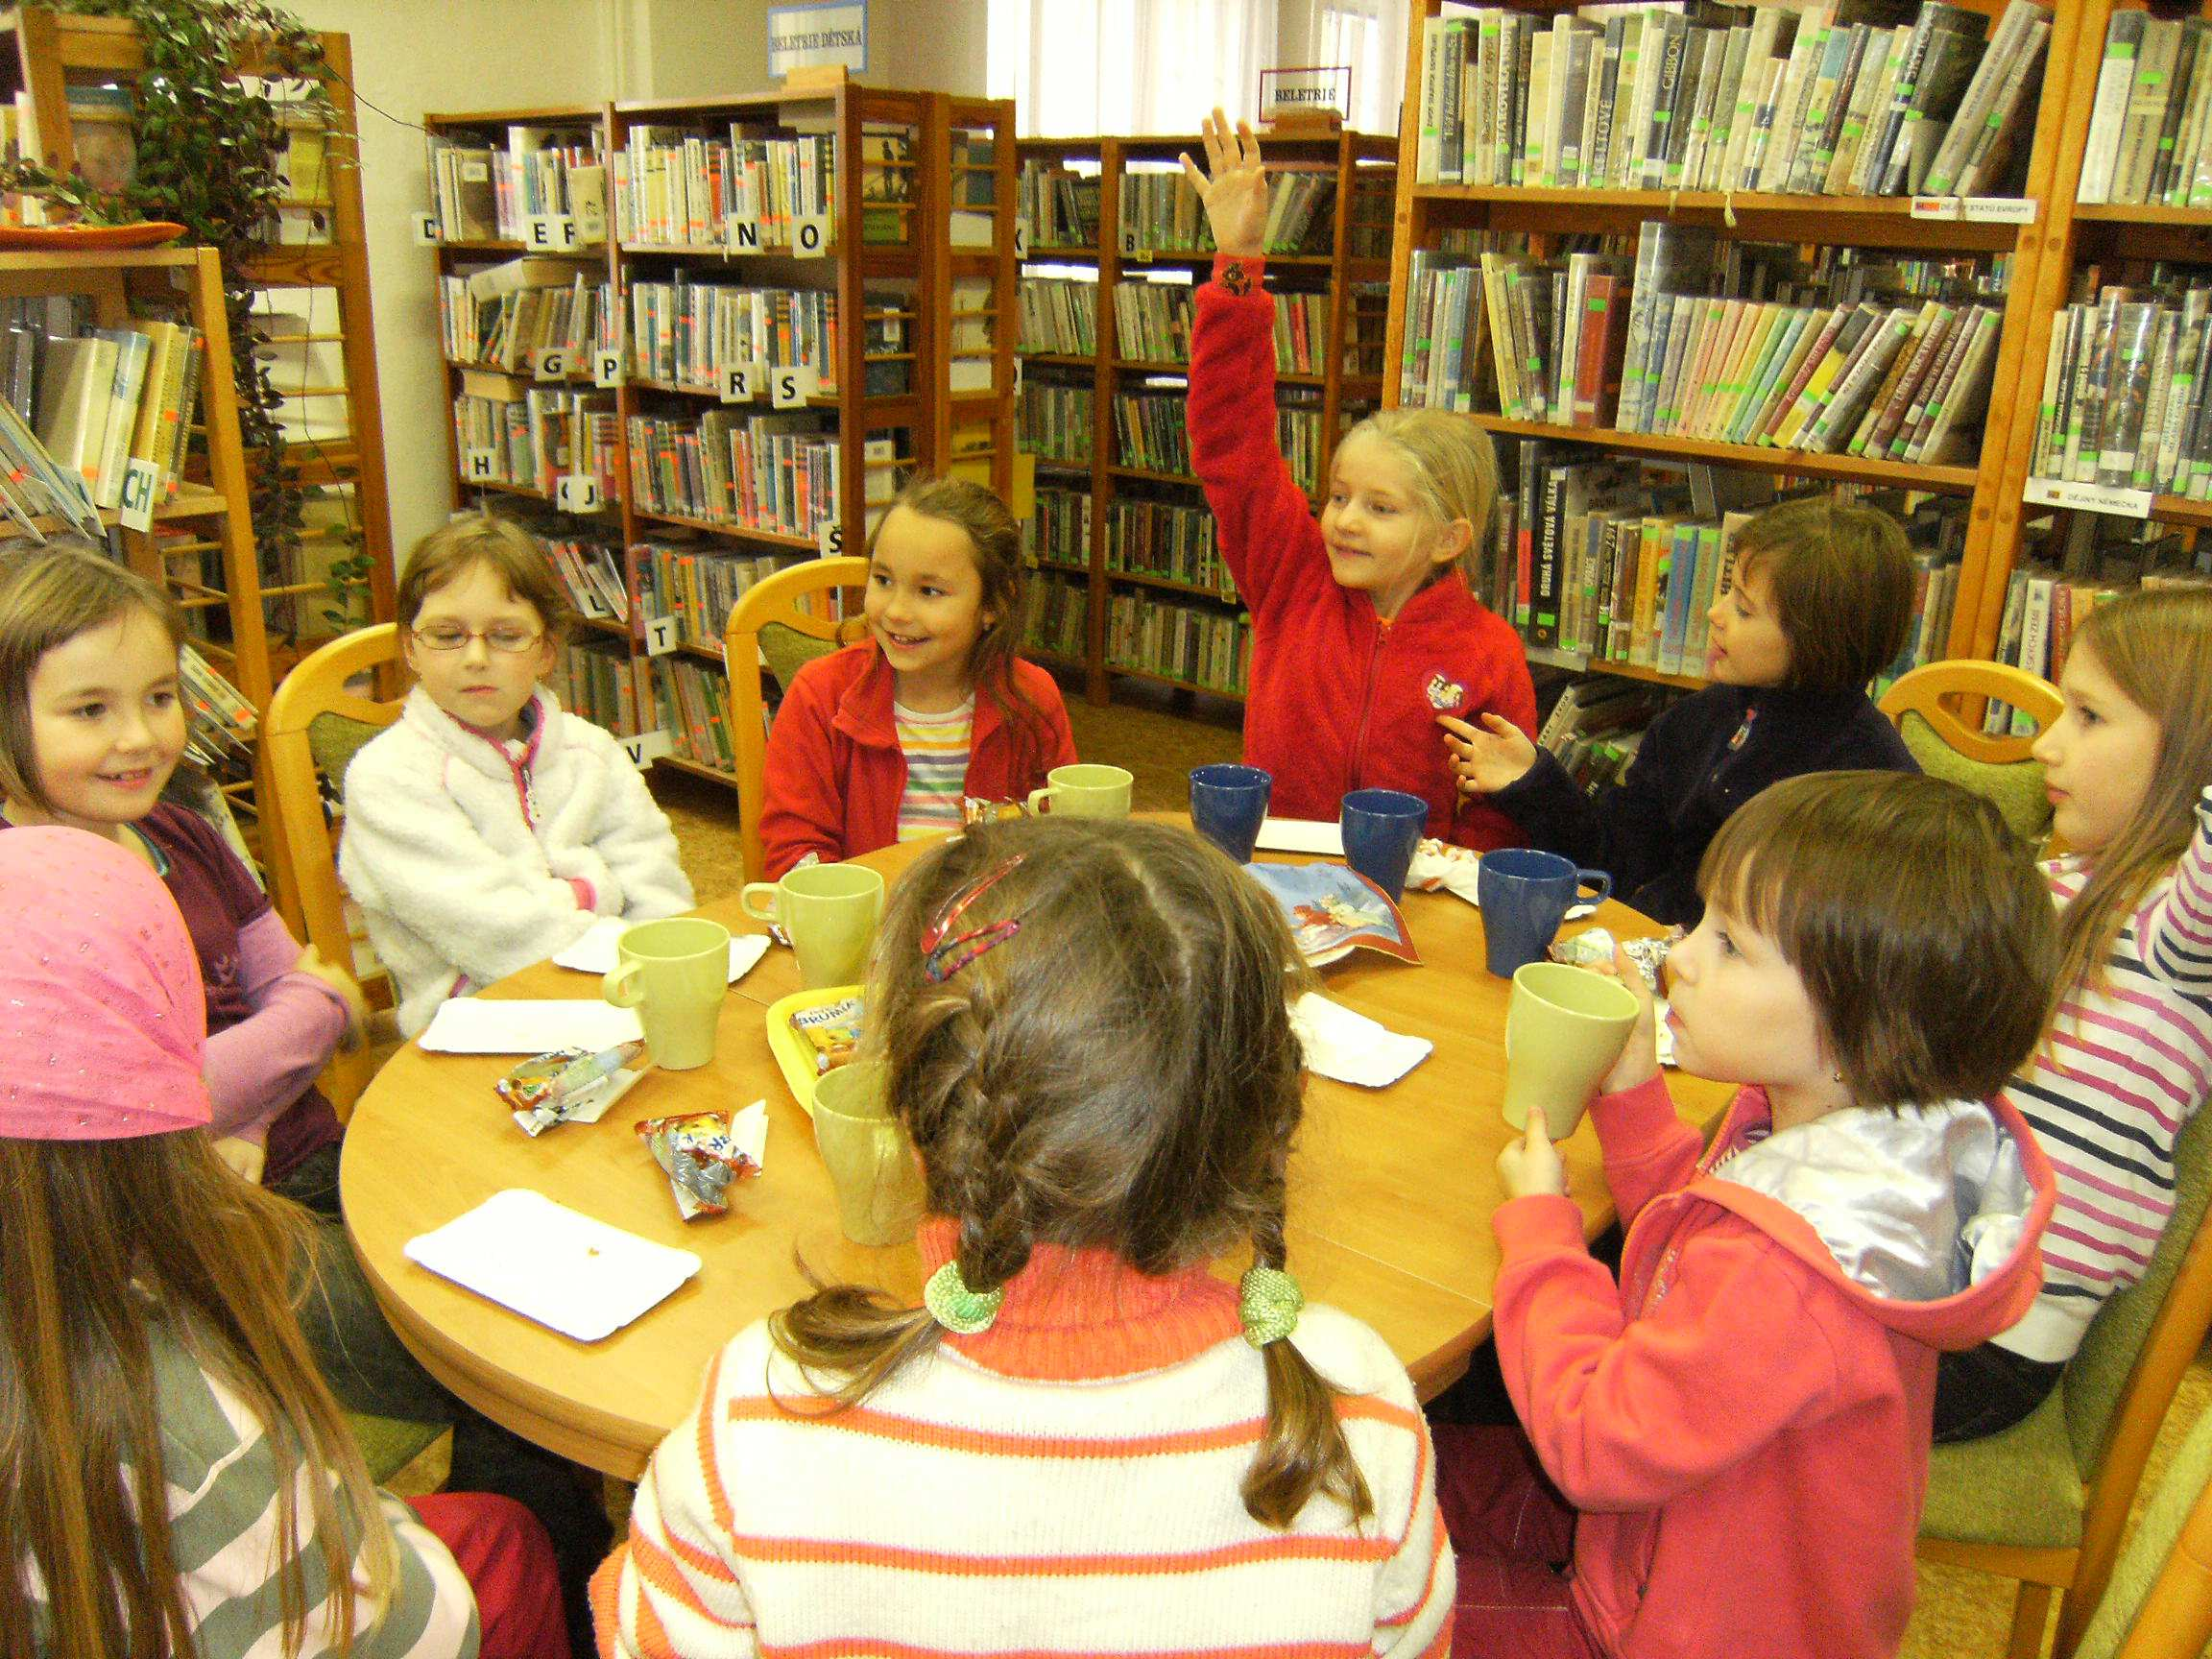 besídky. Za odměnu jsme pozvali žákyně ZUŠ do knihovny na malé občerstvení.